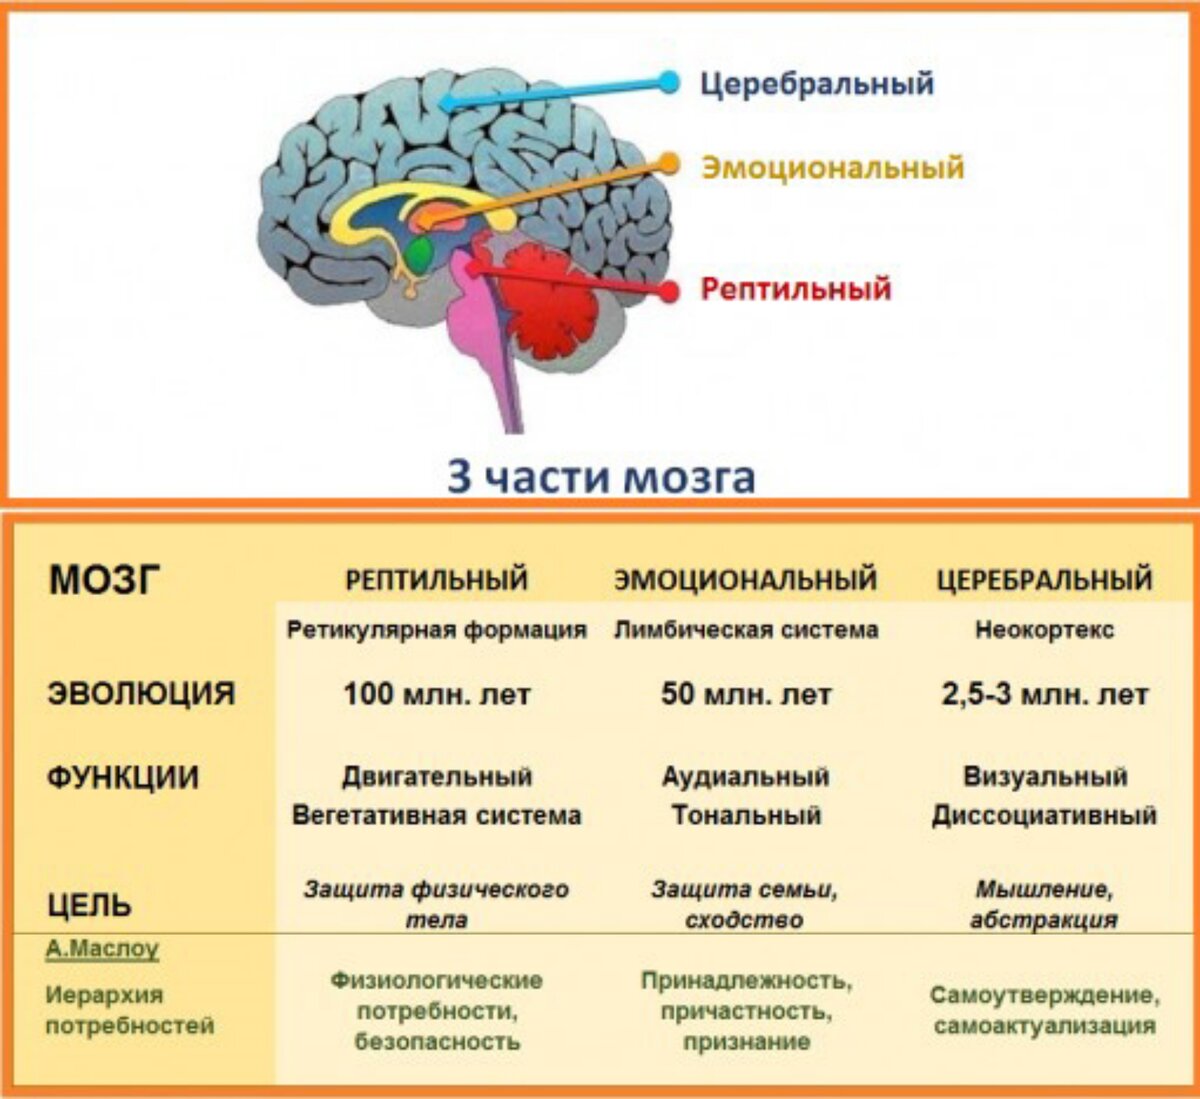 Зона удовольствия. Рептильный мозг и лимбическая система. Отделы мозга рептильный мозг. Рептильный мозг и неокортекс. Строение мозга неокортекс.